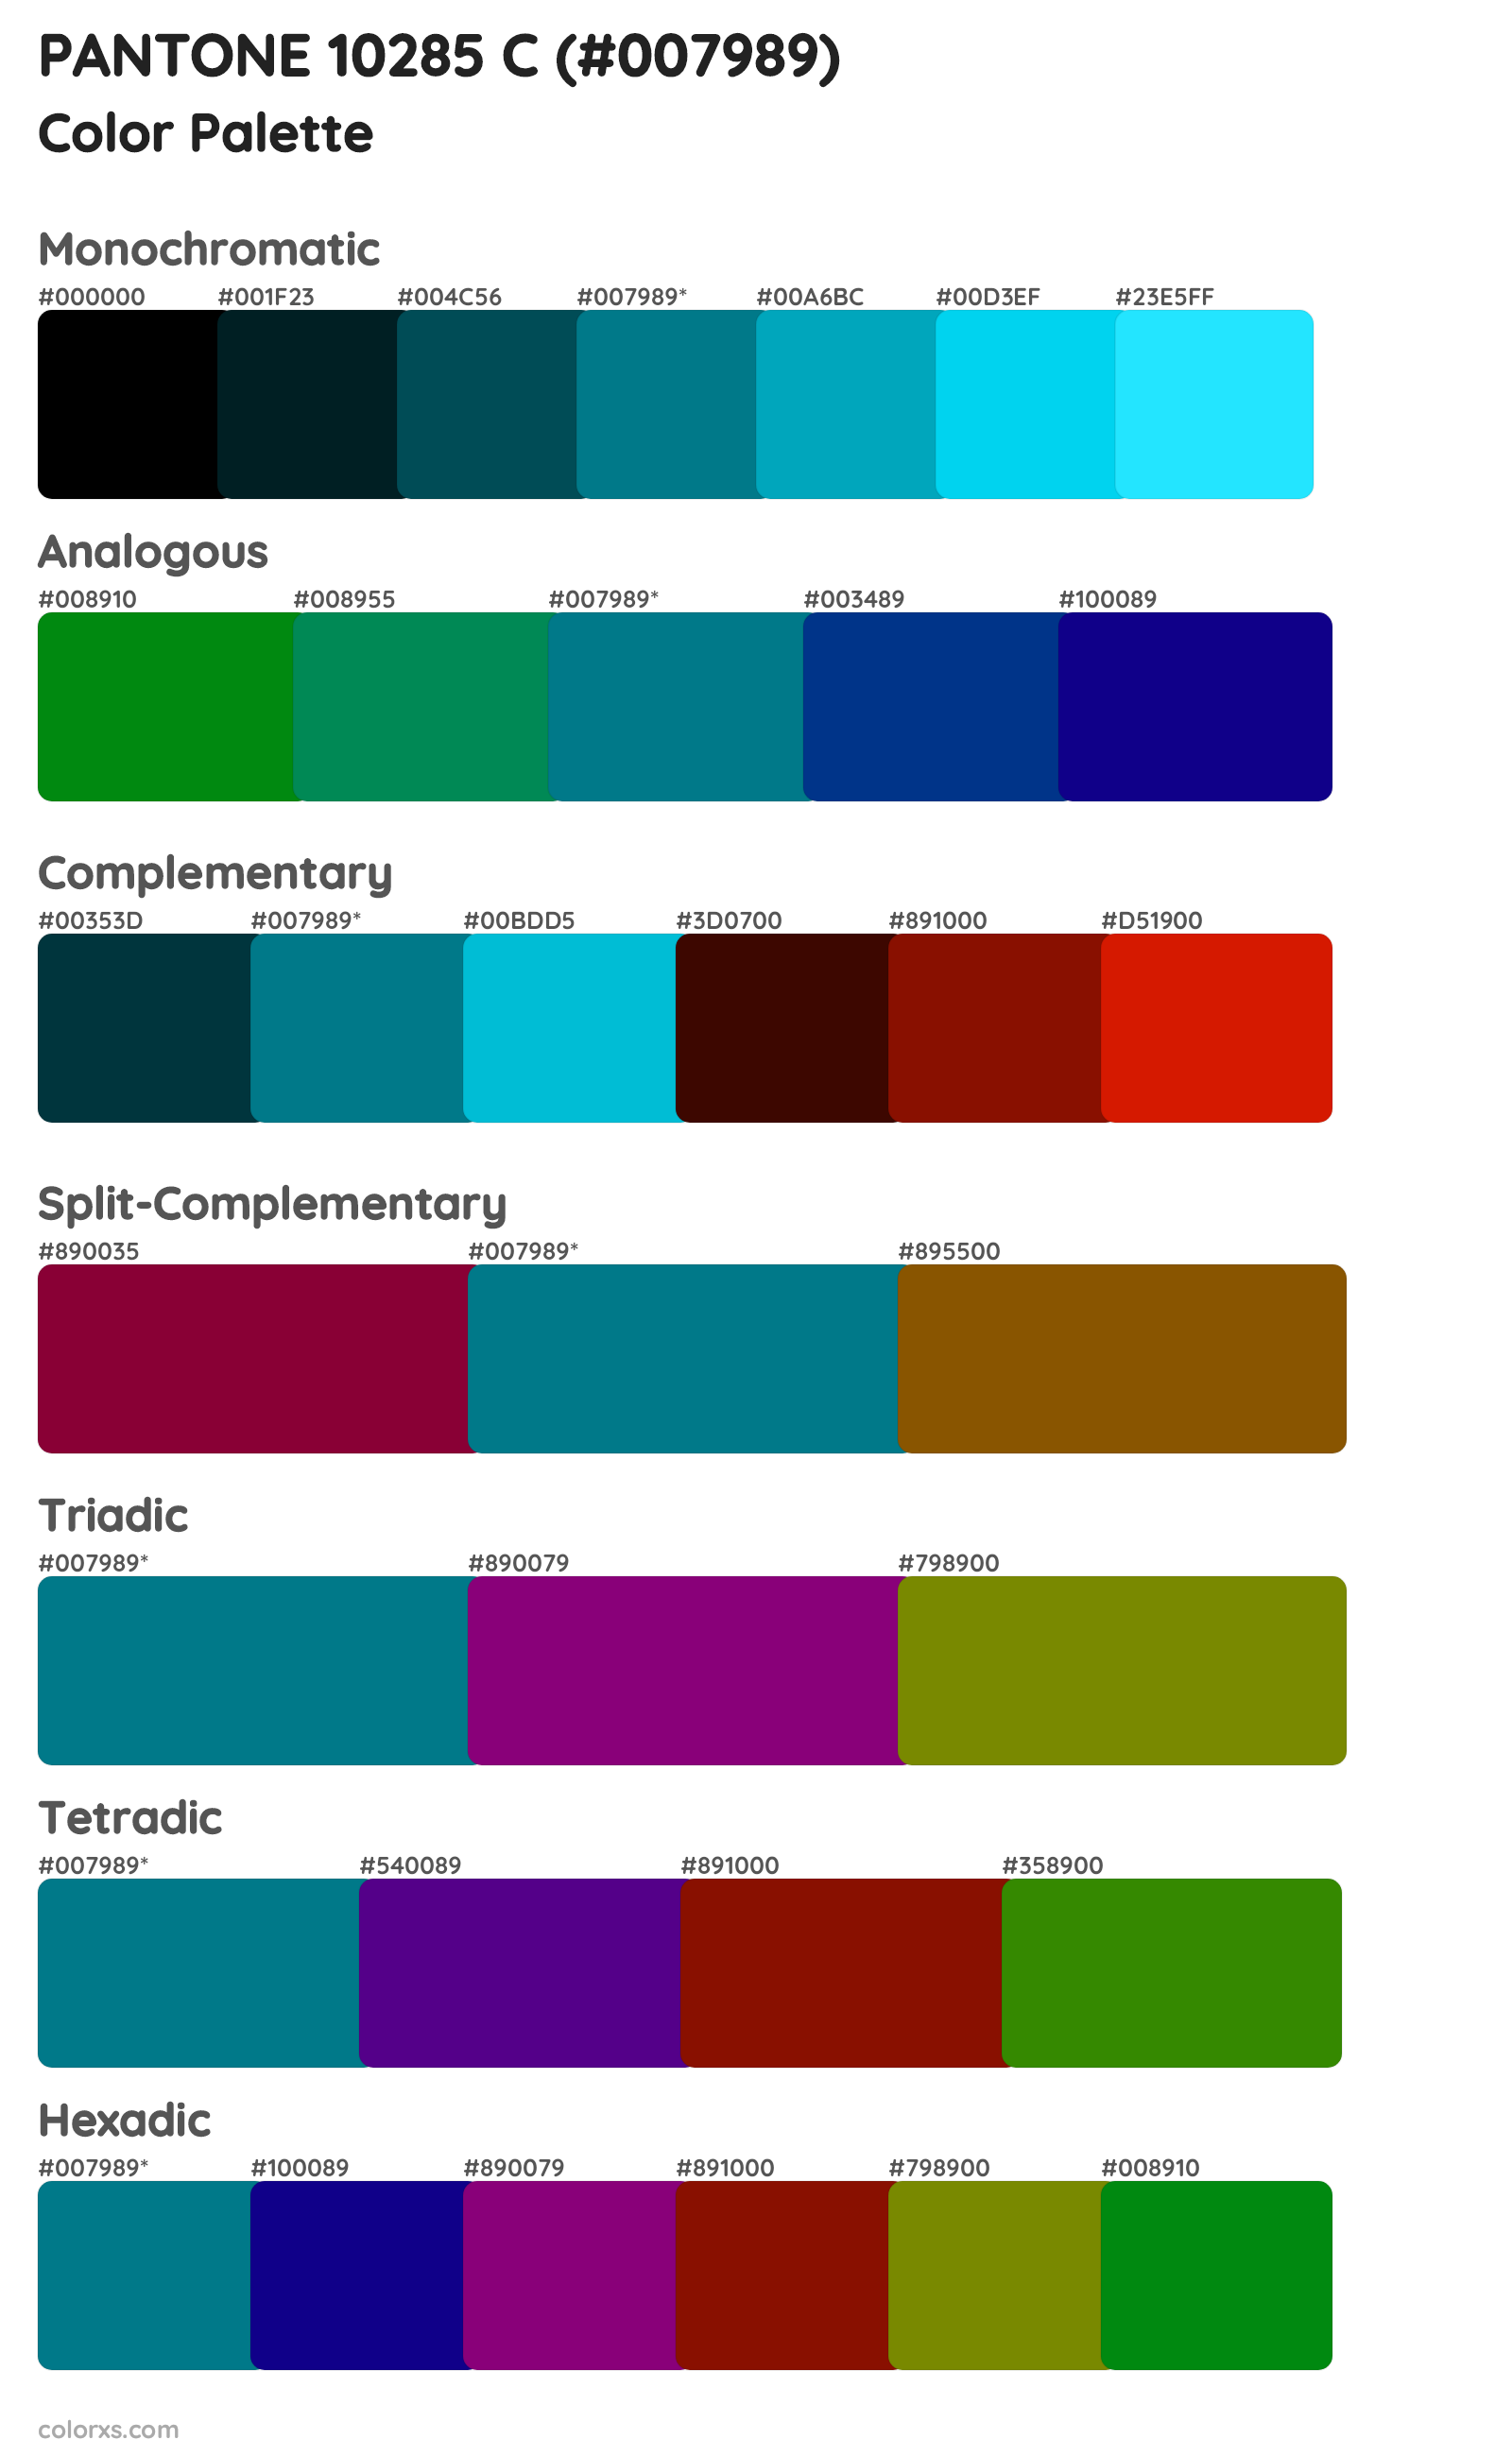 PANTONE 10285 C Color Scheme Palettes